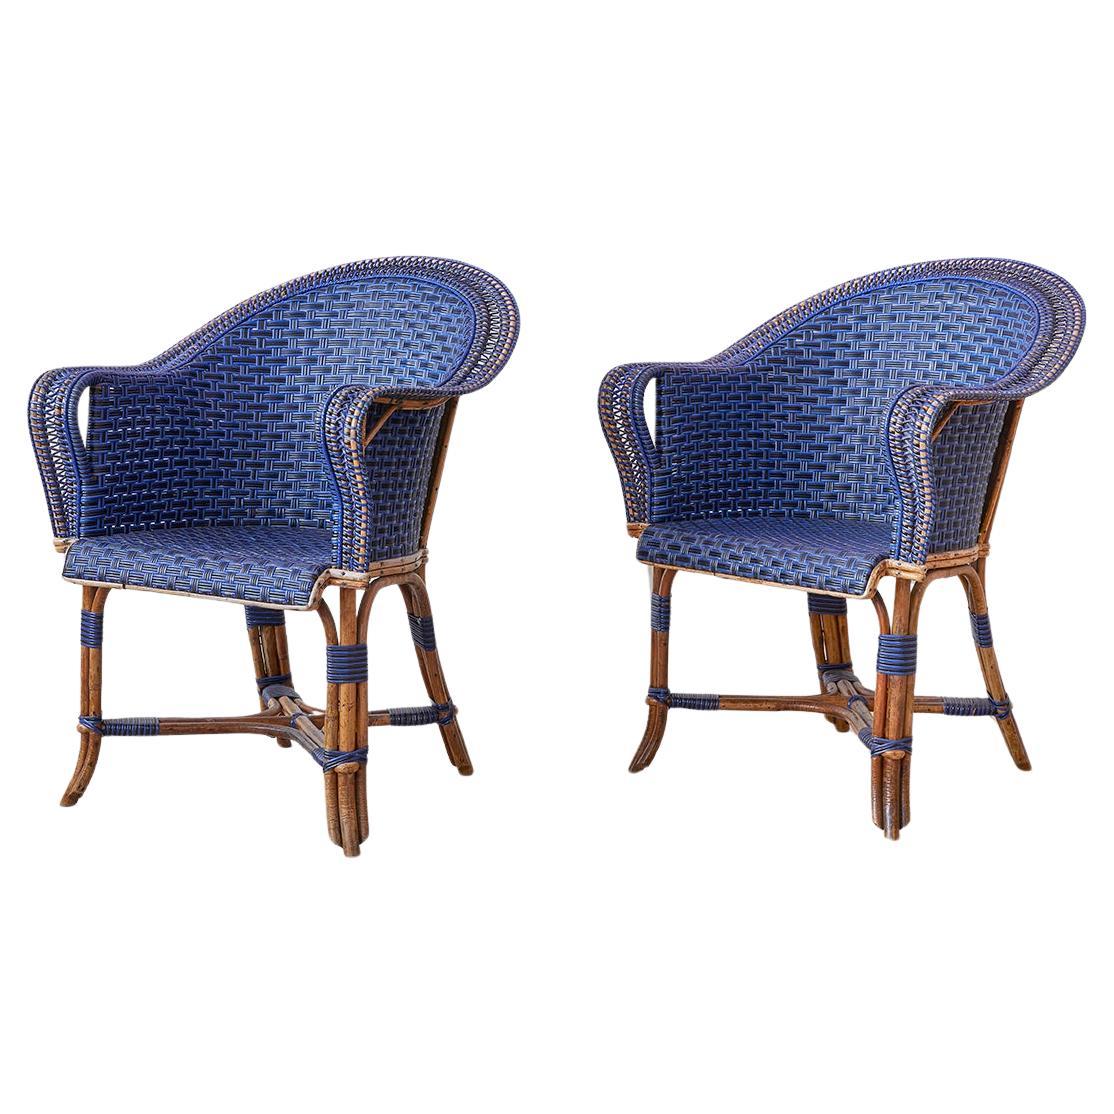 Paire de fauteuils en rotin bleu et noir, France, début du 20e siècle